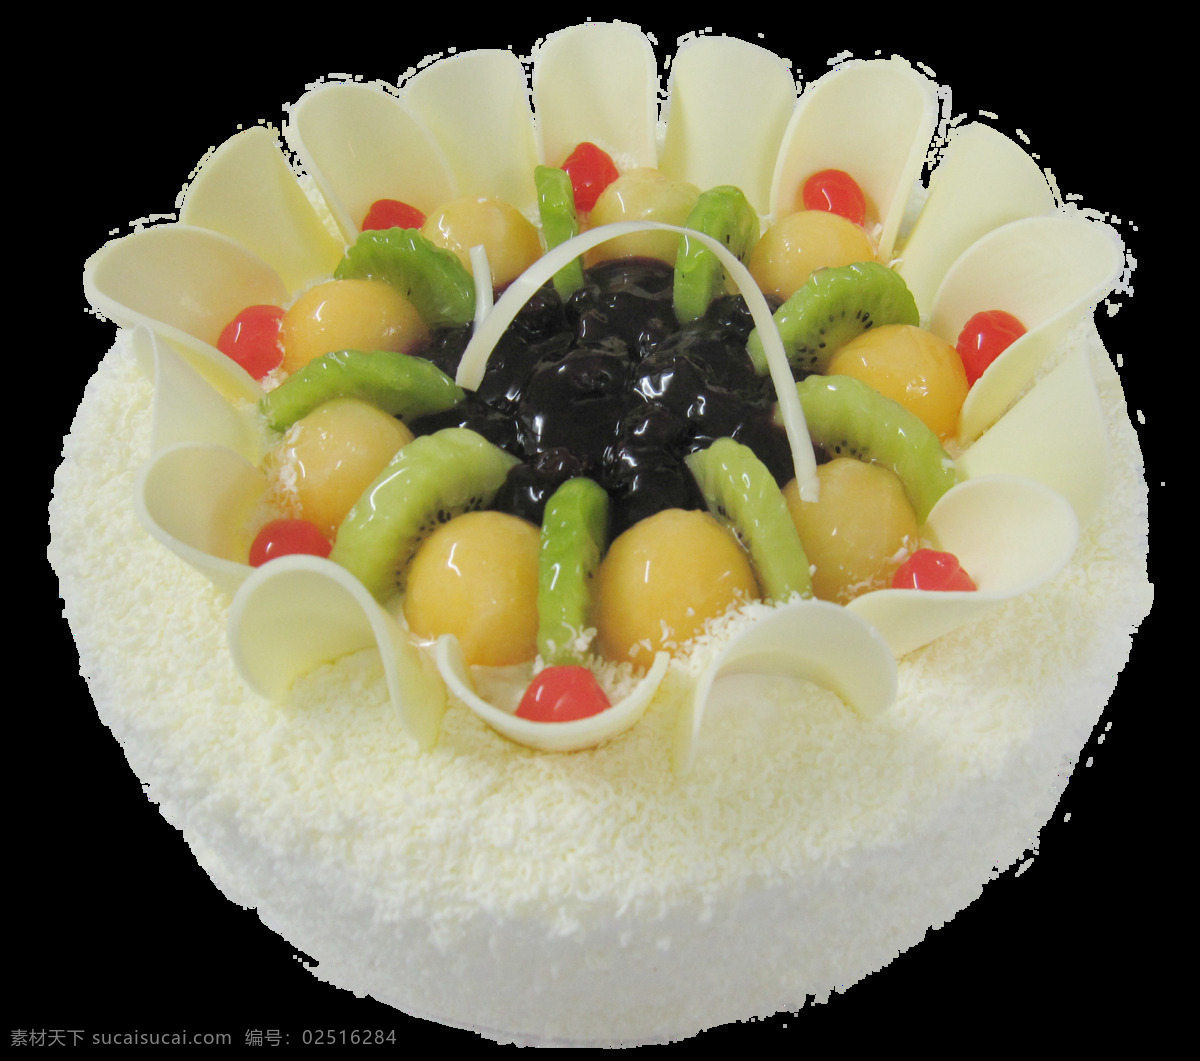 白 巧克力 水果 蛋糕 白巧克力 蛋糕图案 巧克力蛋糕 生日蛋糕装饰 食物 水果蛋糕